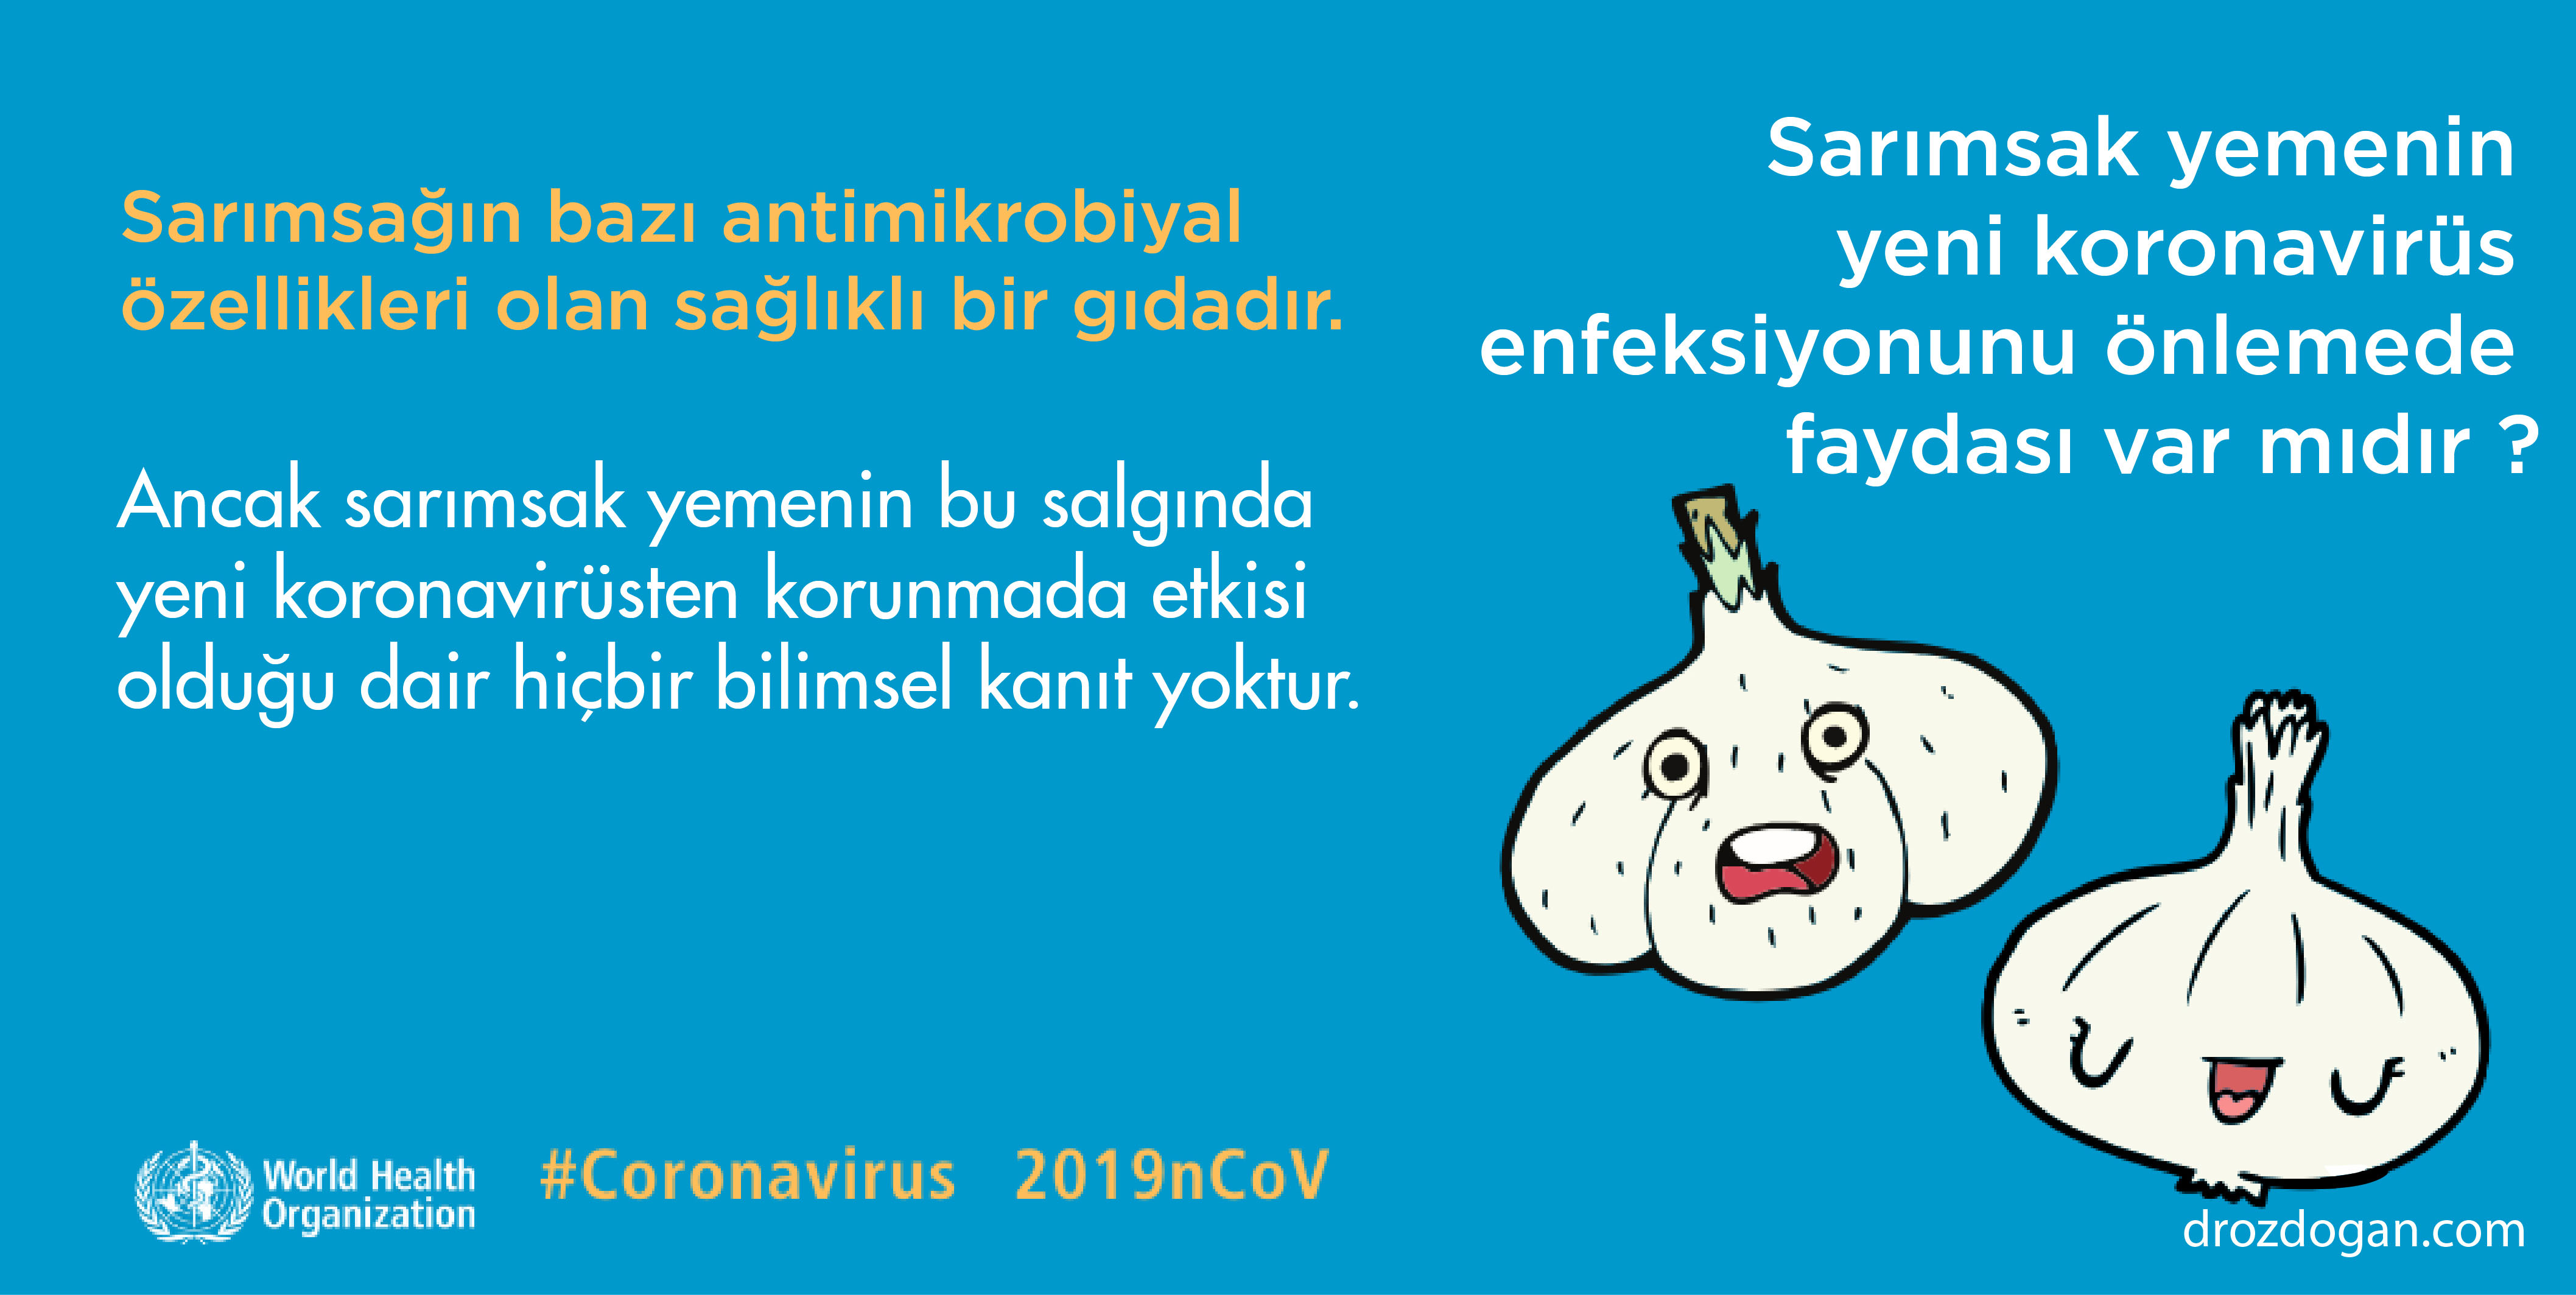 sarımsak yemek yeni koronavirüs enfeksiyonundan korur mu